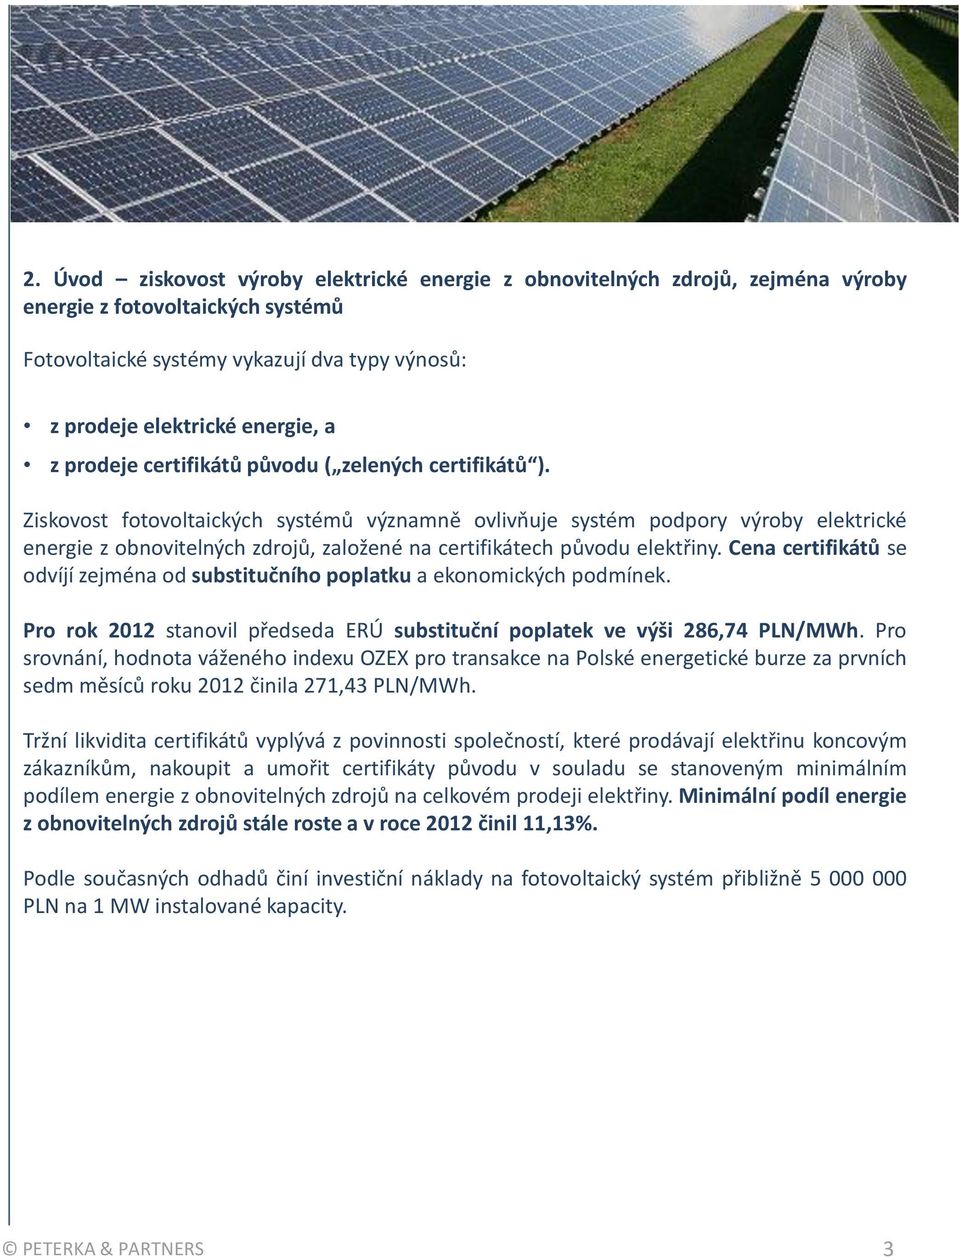 Ziskovost fotovoltaických systémů významně ovlivňuje systém podpory výroby elektrické energie z obnovitelných zdrojů, založené na certifikátech původu elektřiny.